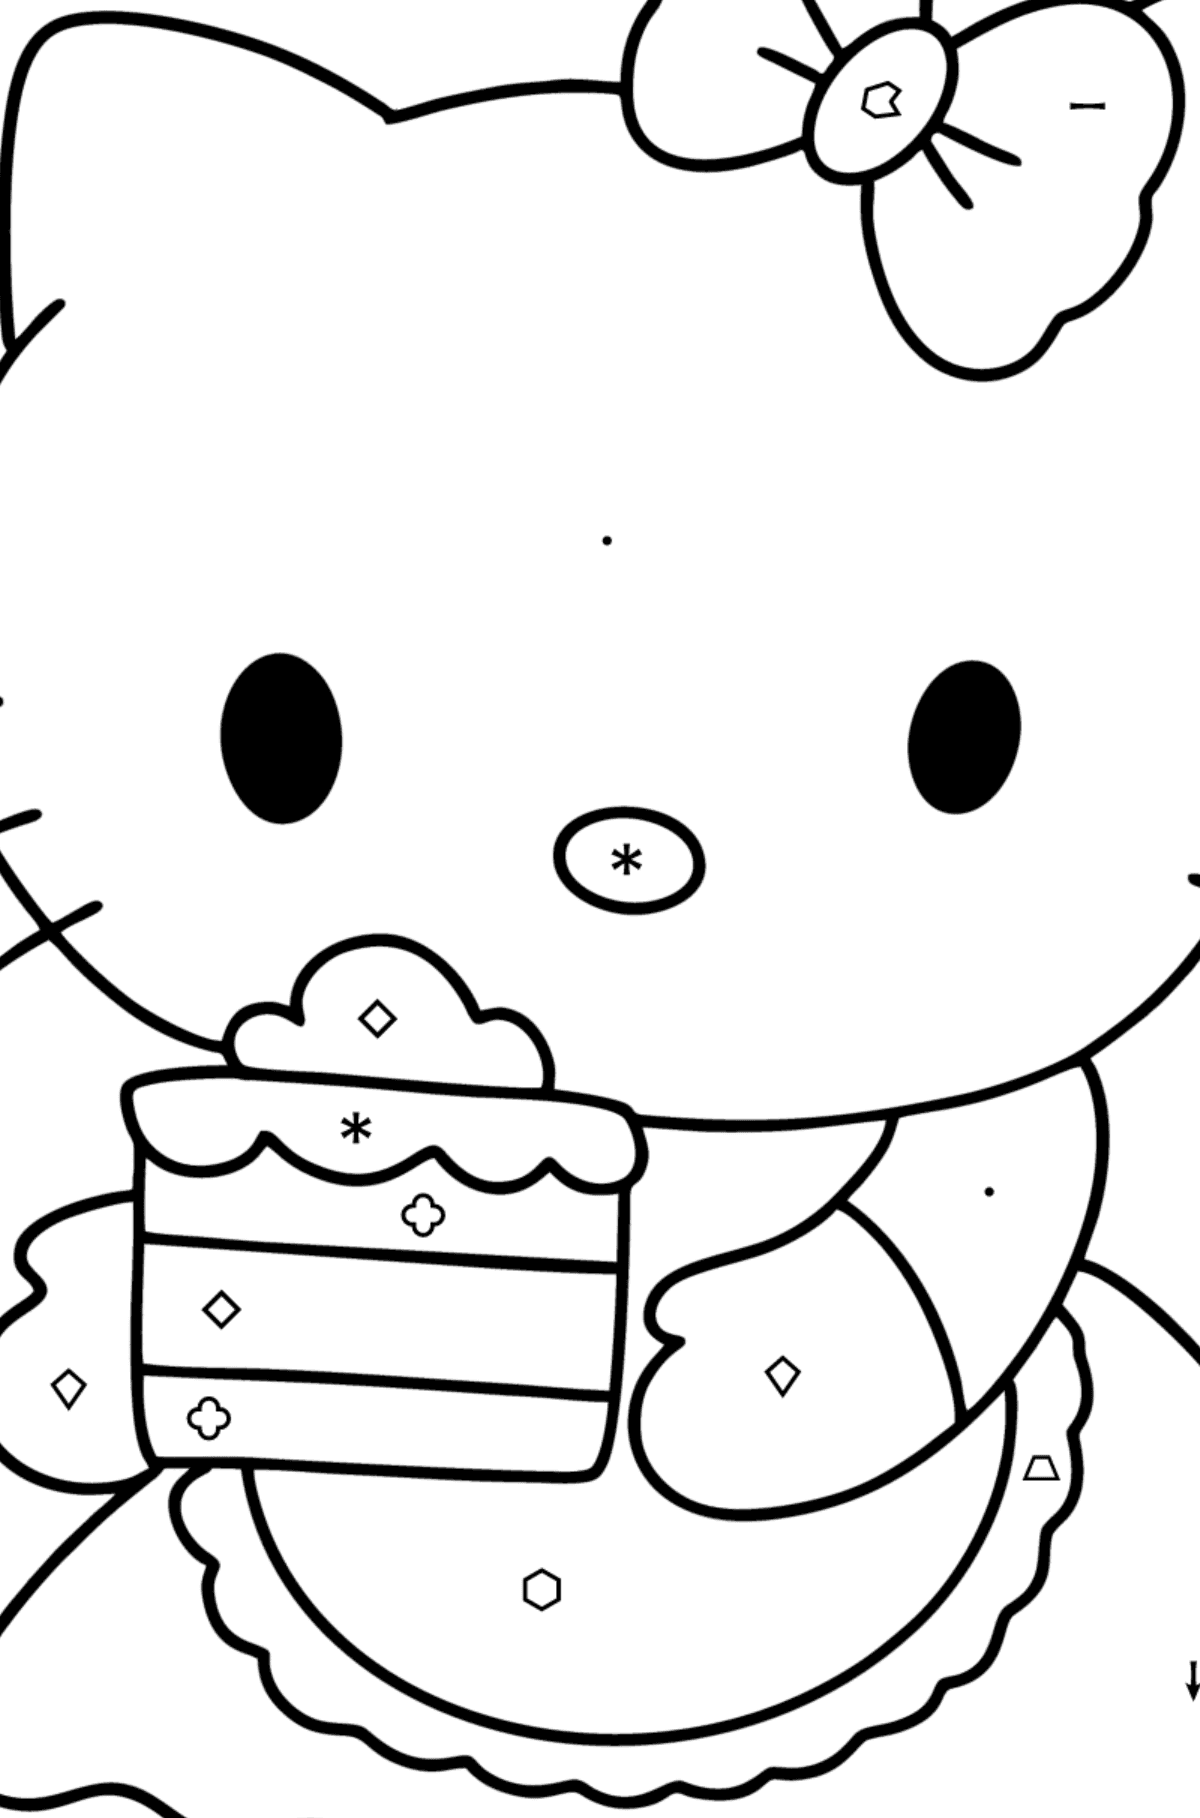 Boyama sayfası Hello Kitty ve pasta - Sembollere ve Geometrik Şekillerle Boyama çocuklar için